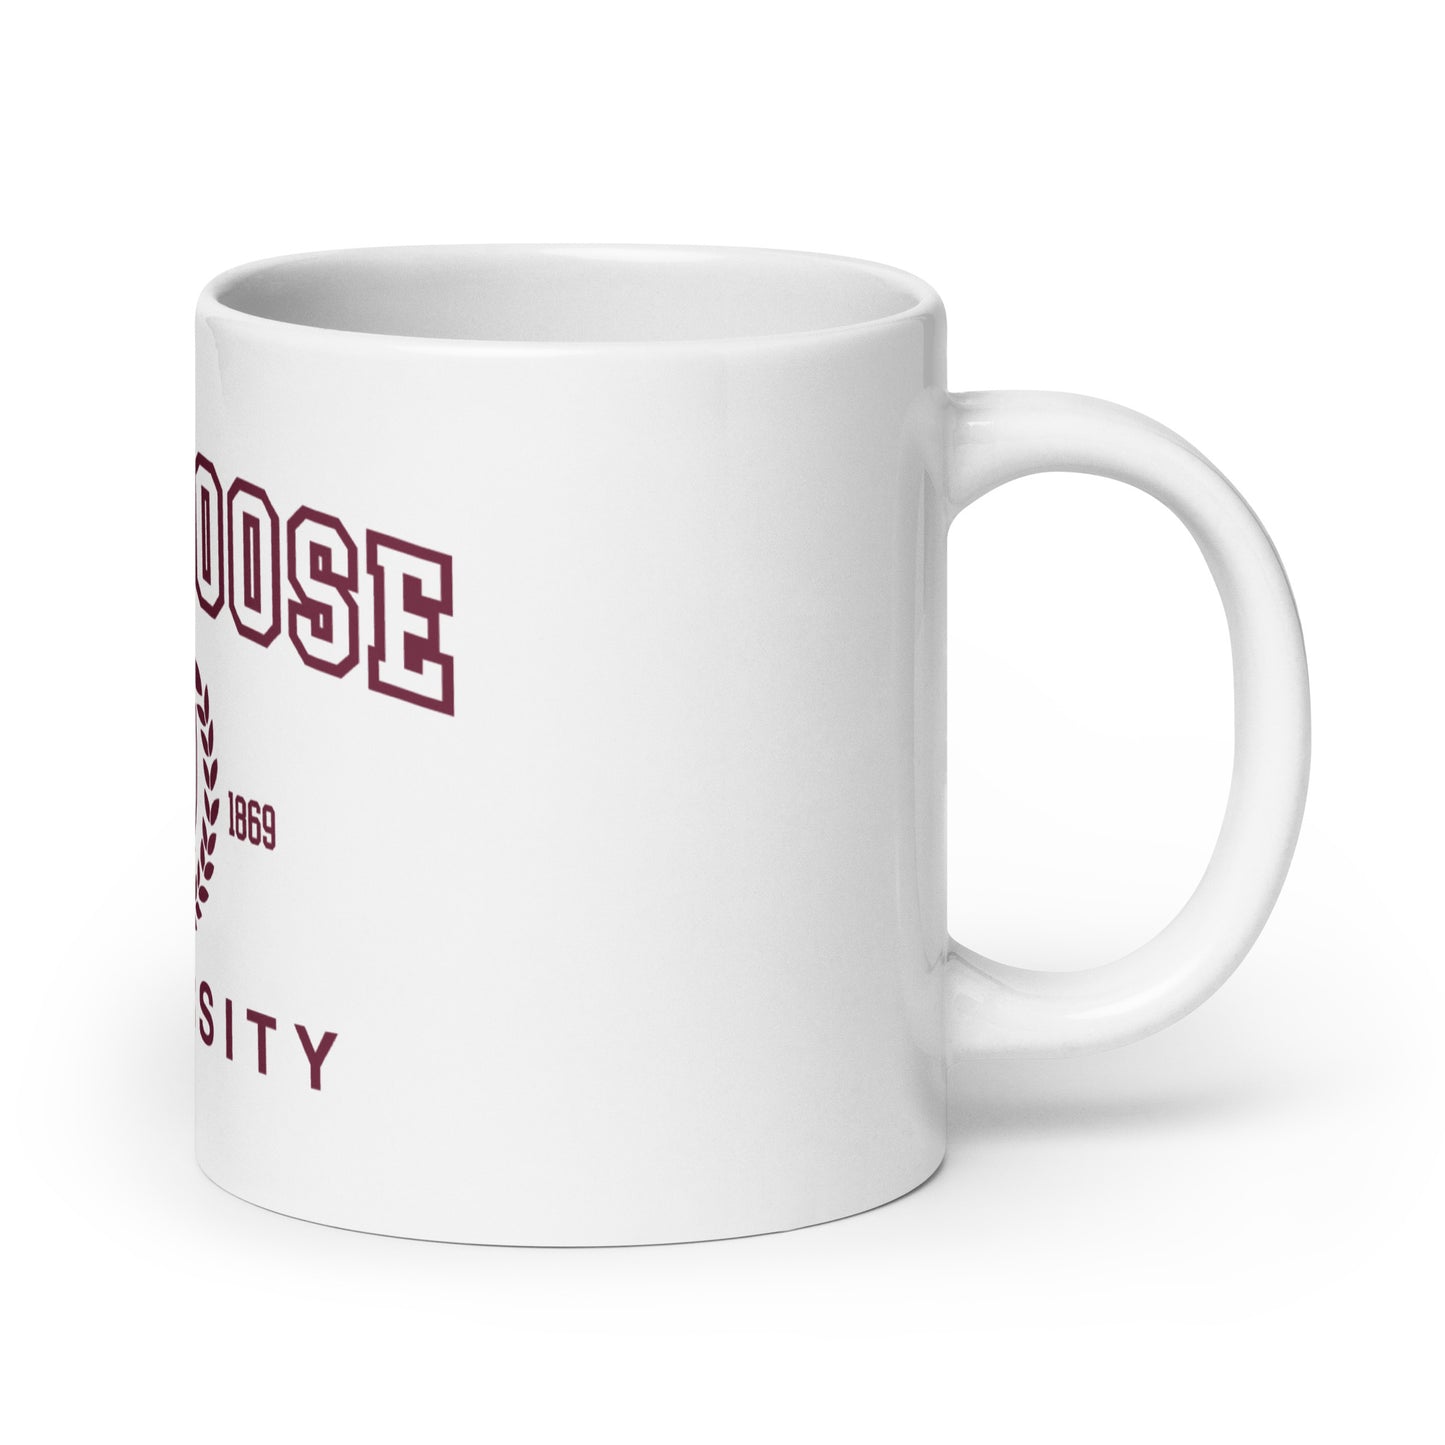 Silly Goose University mug